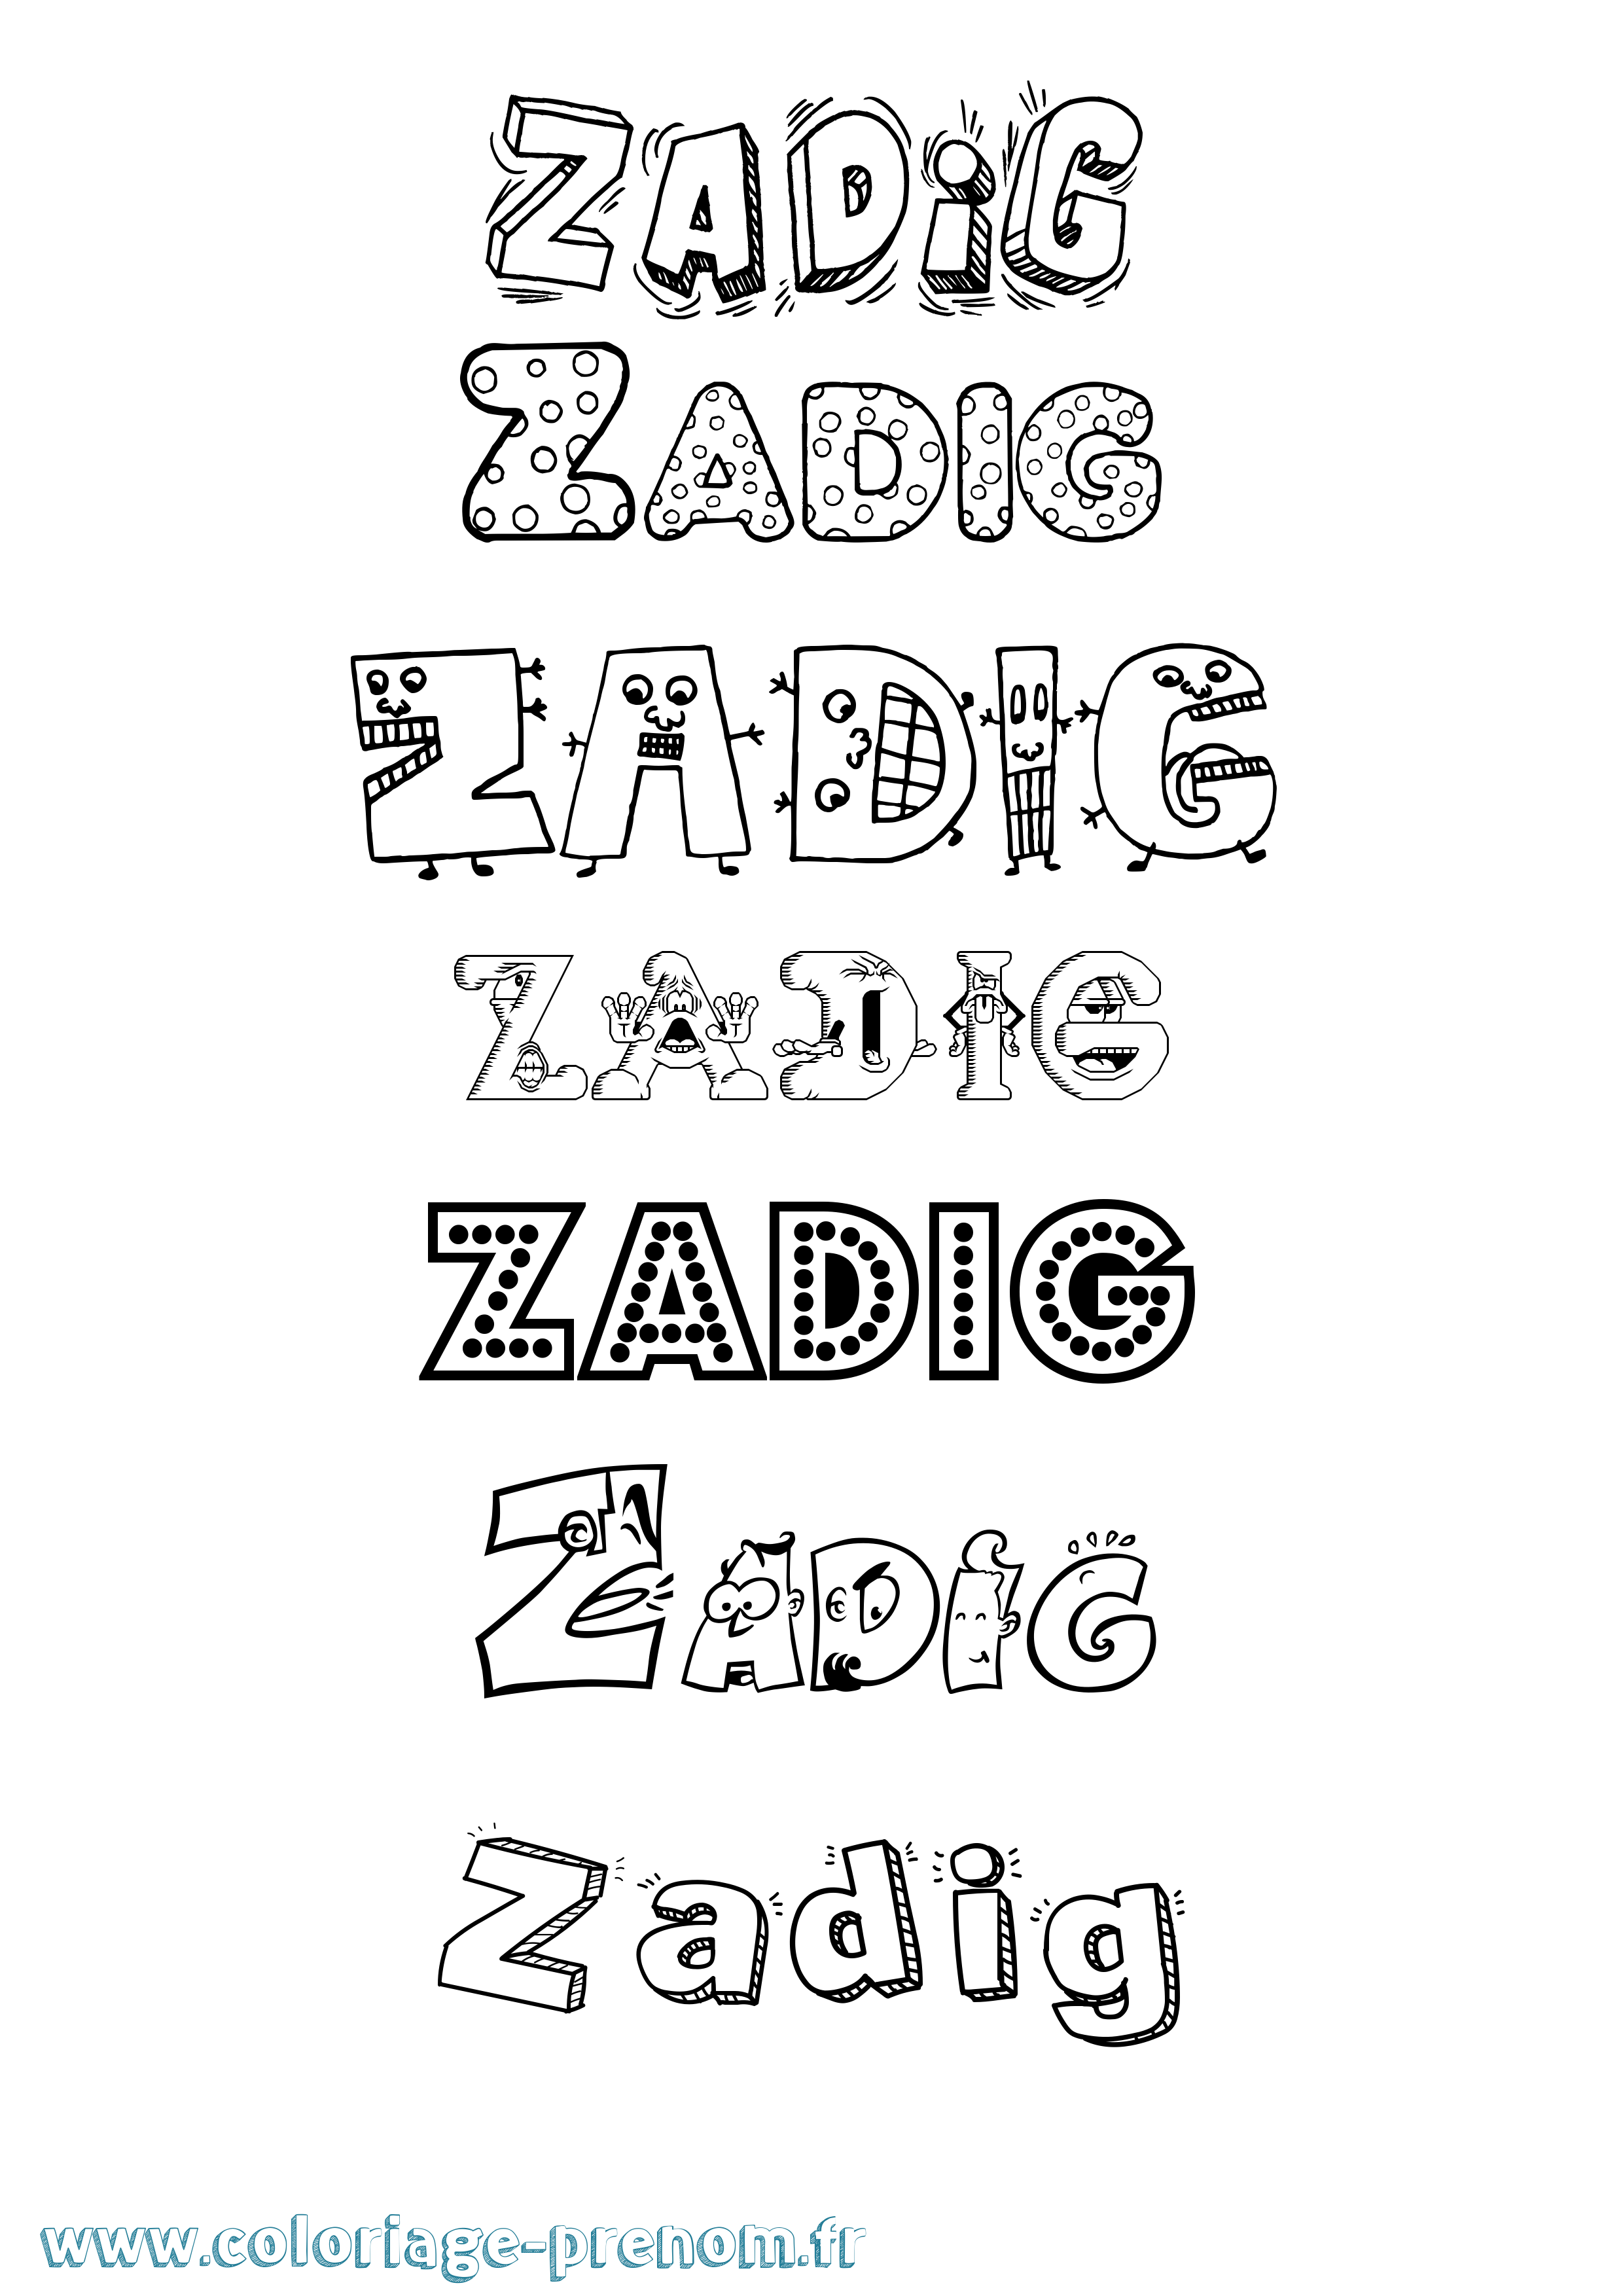 Coloriage prénom Zadig